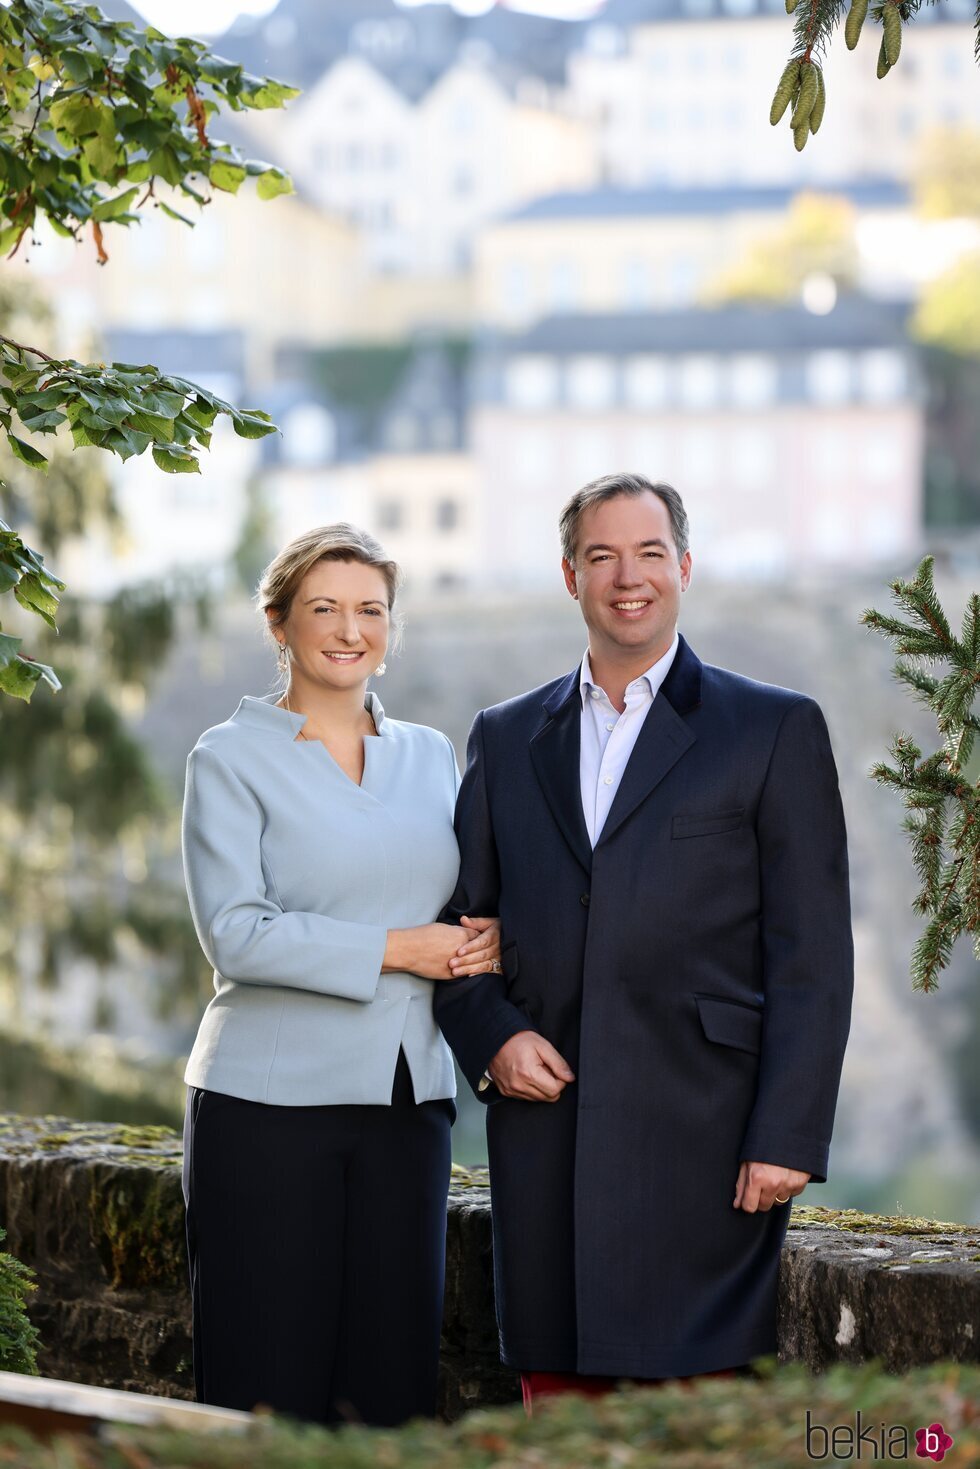 Guillermo y Stéphanie de Luxemburgo posan muy sonrientes en su décimo aniversario de boda